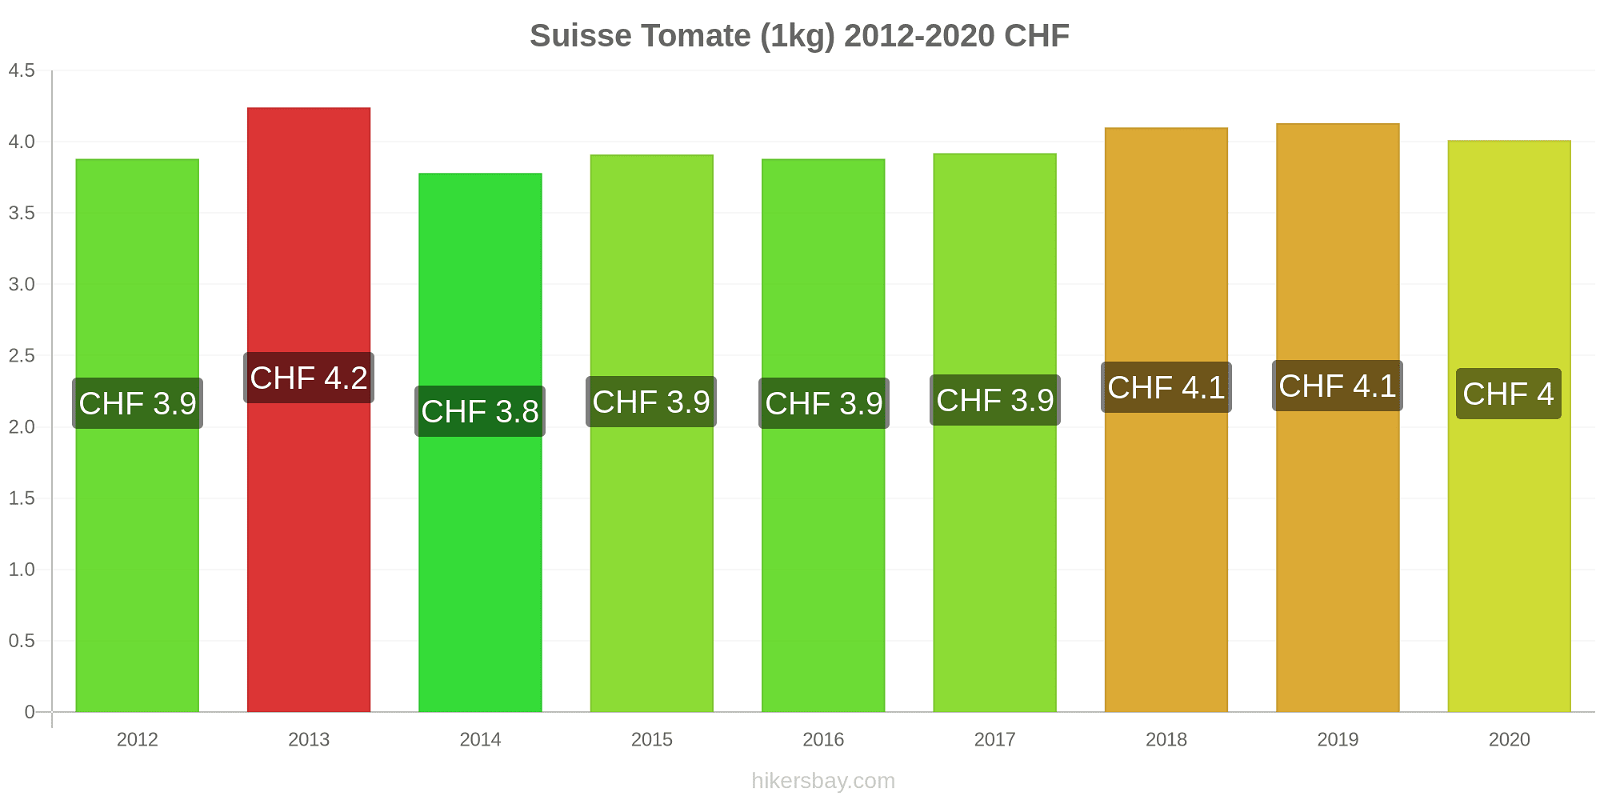 Suisse changements de prix Tomate (1kg) hikersbay.com